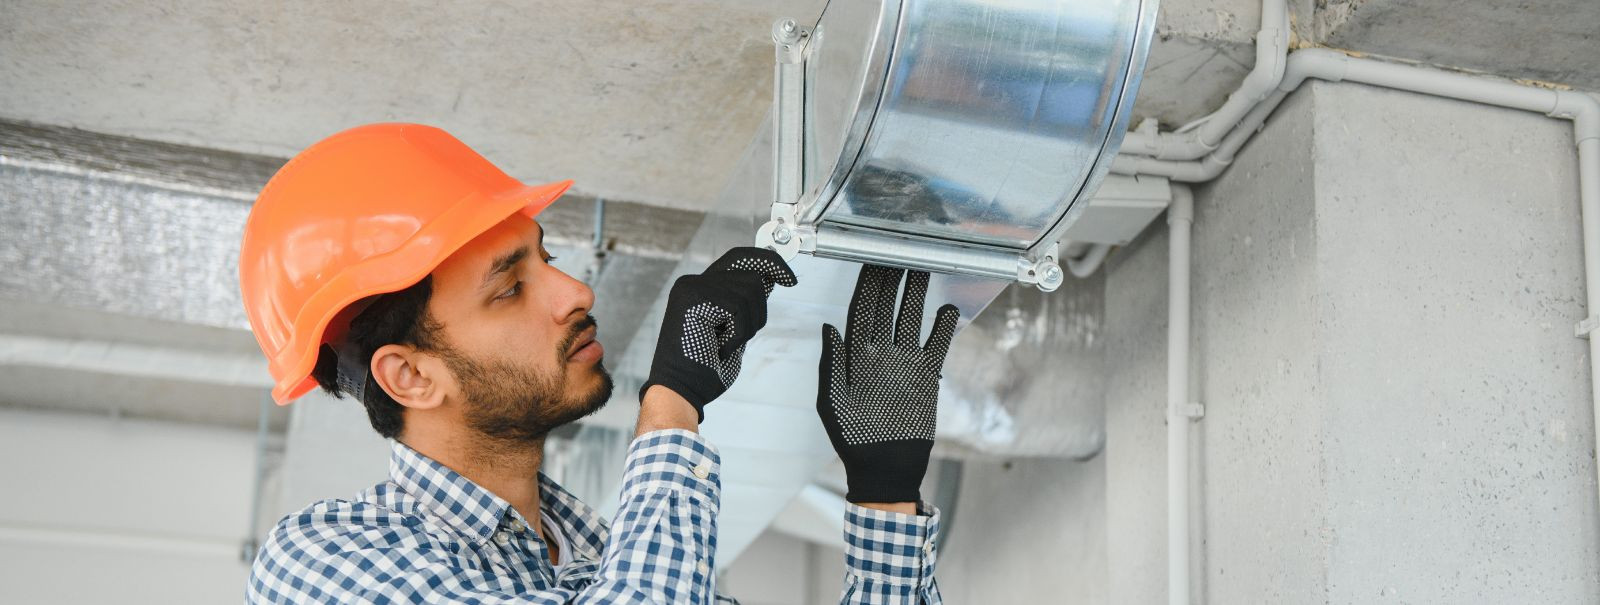 Ventilatsioonisüsteemide hooldus on koduõhu kvaliteedi tagamiseks hädavajalik, kuid sageli alahinnatud osa koduhooldusest. Regulaarne ventilatsioonihooldus toob